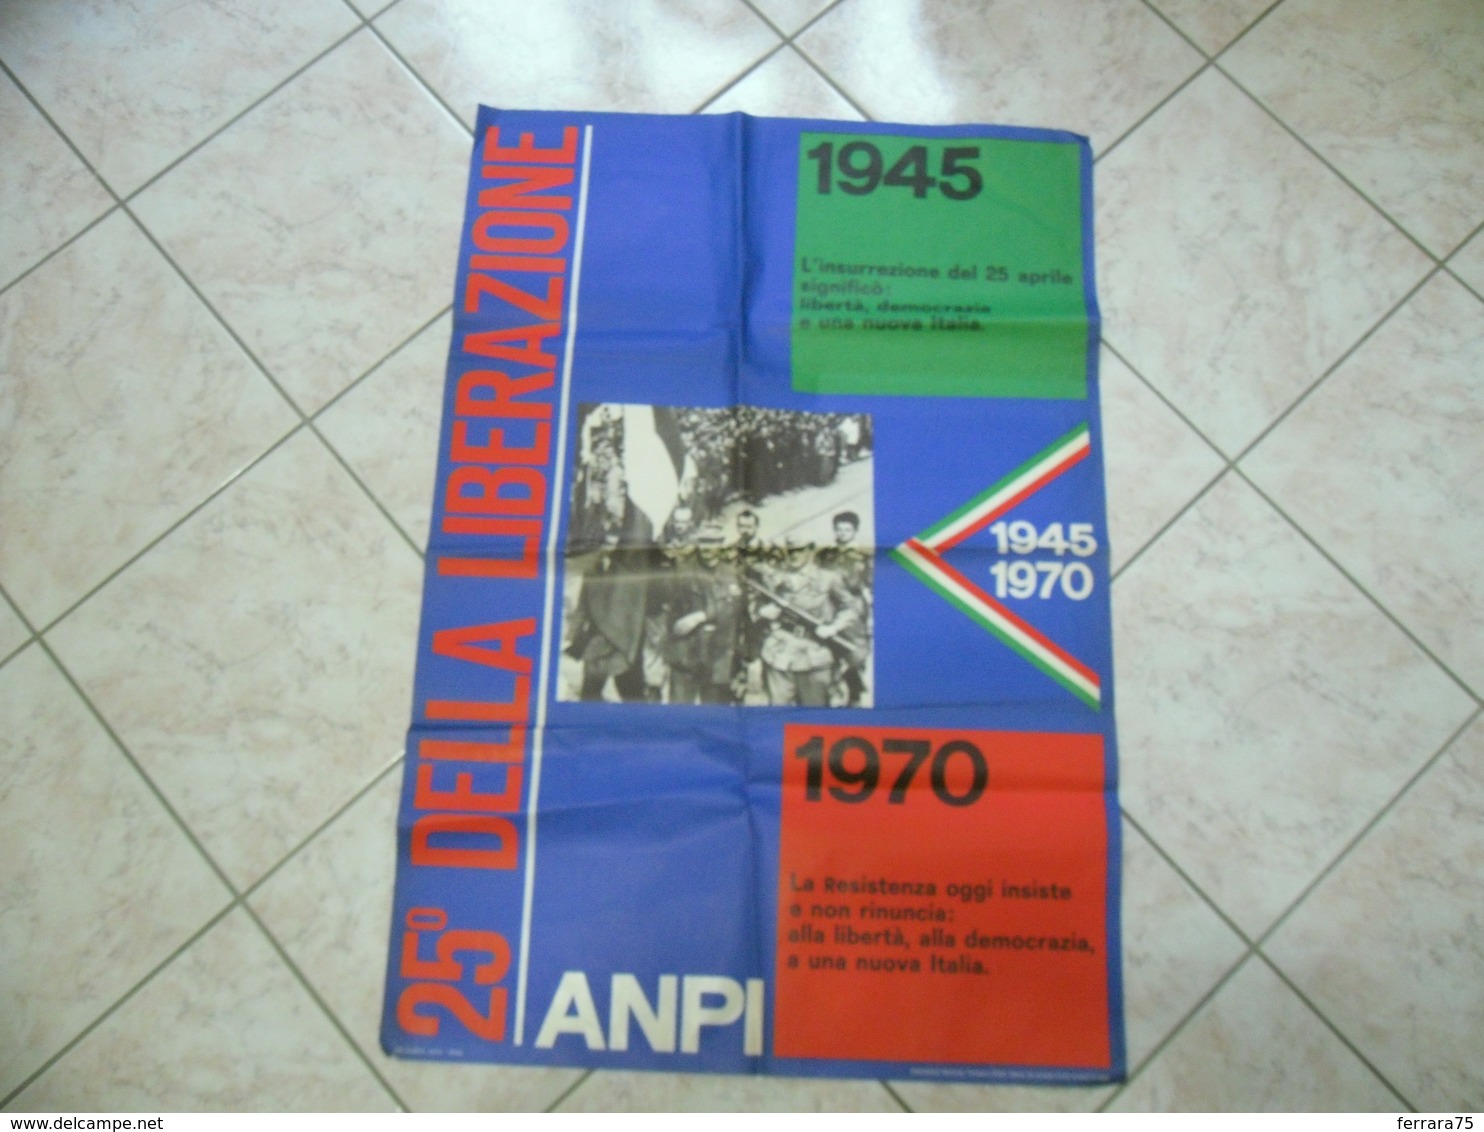 ANPI MANIFESTO RESISTENZA 25°DELLA LIBERAZIONE 25 APRILE 1945/1970 - Manifesti